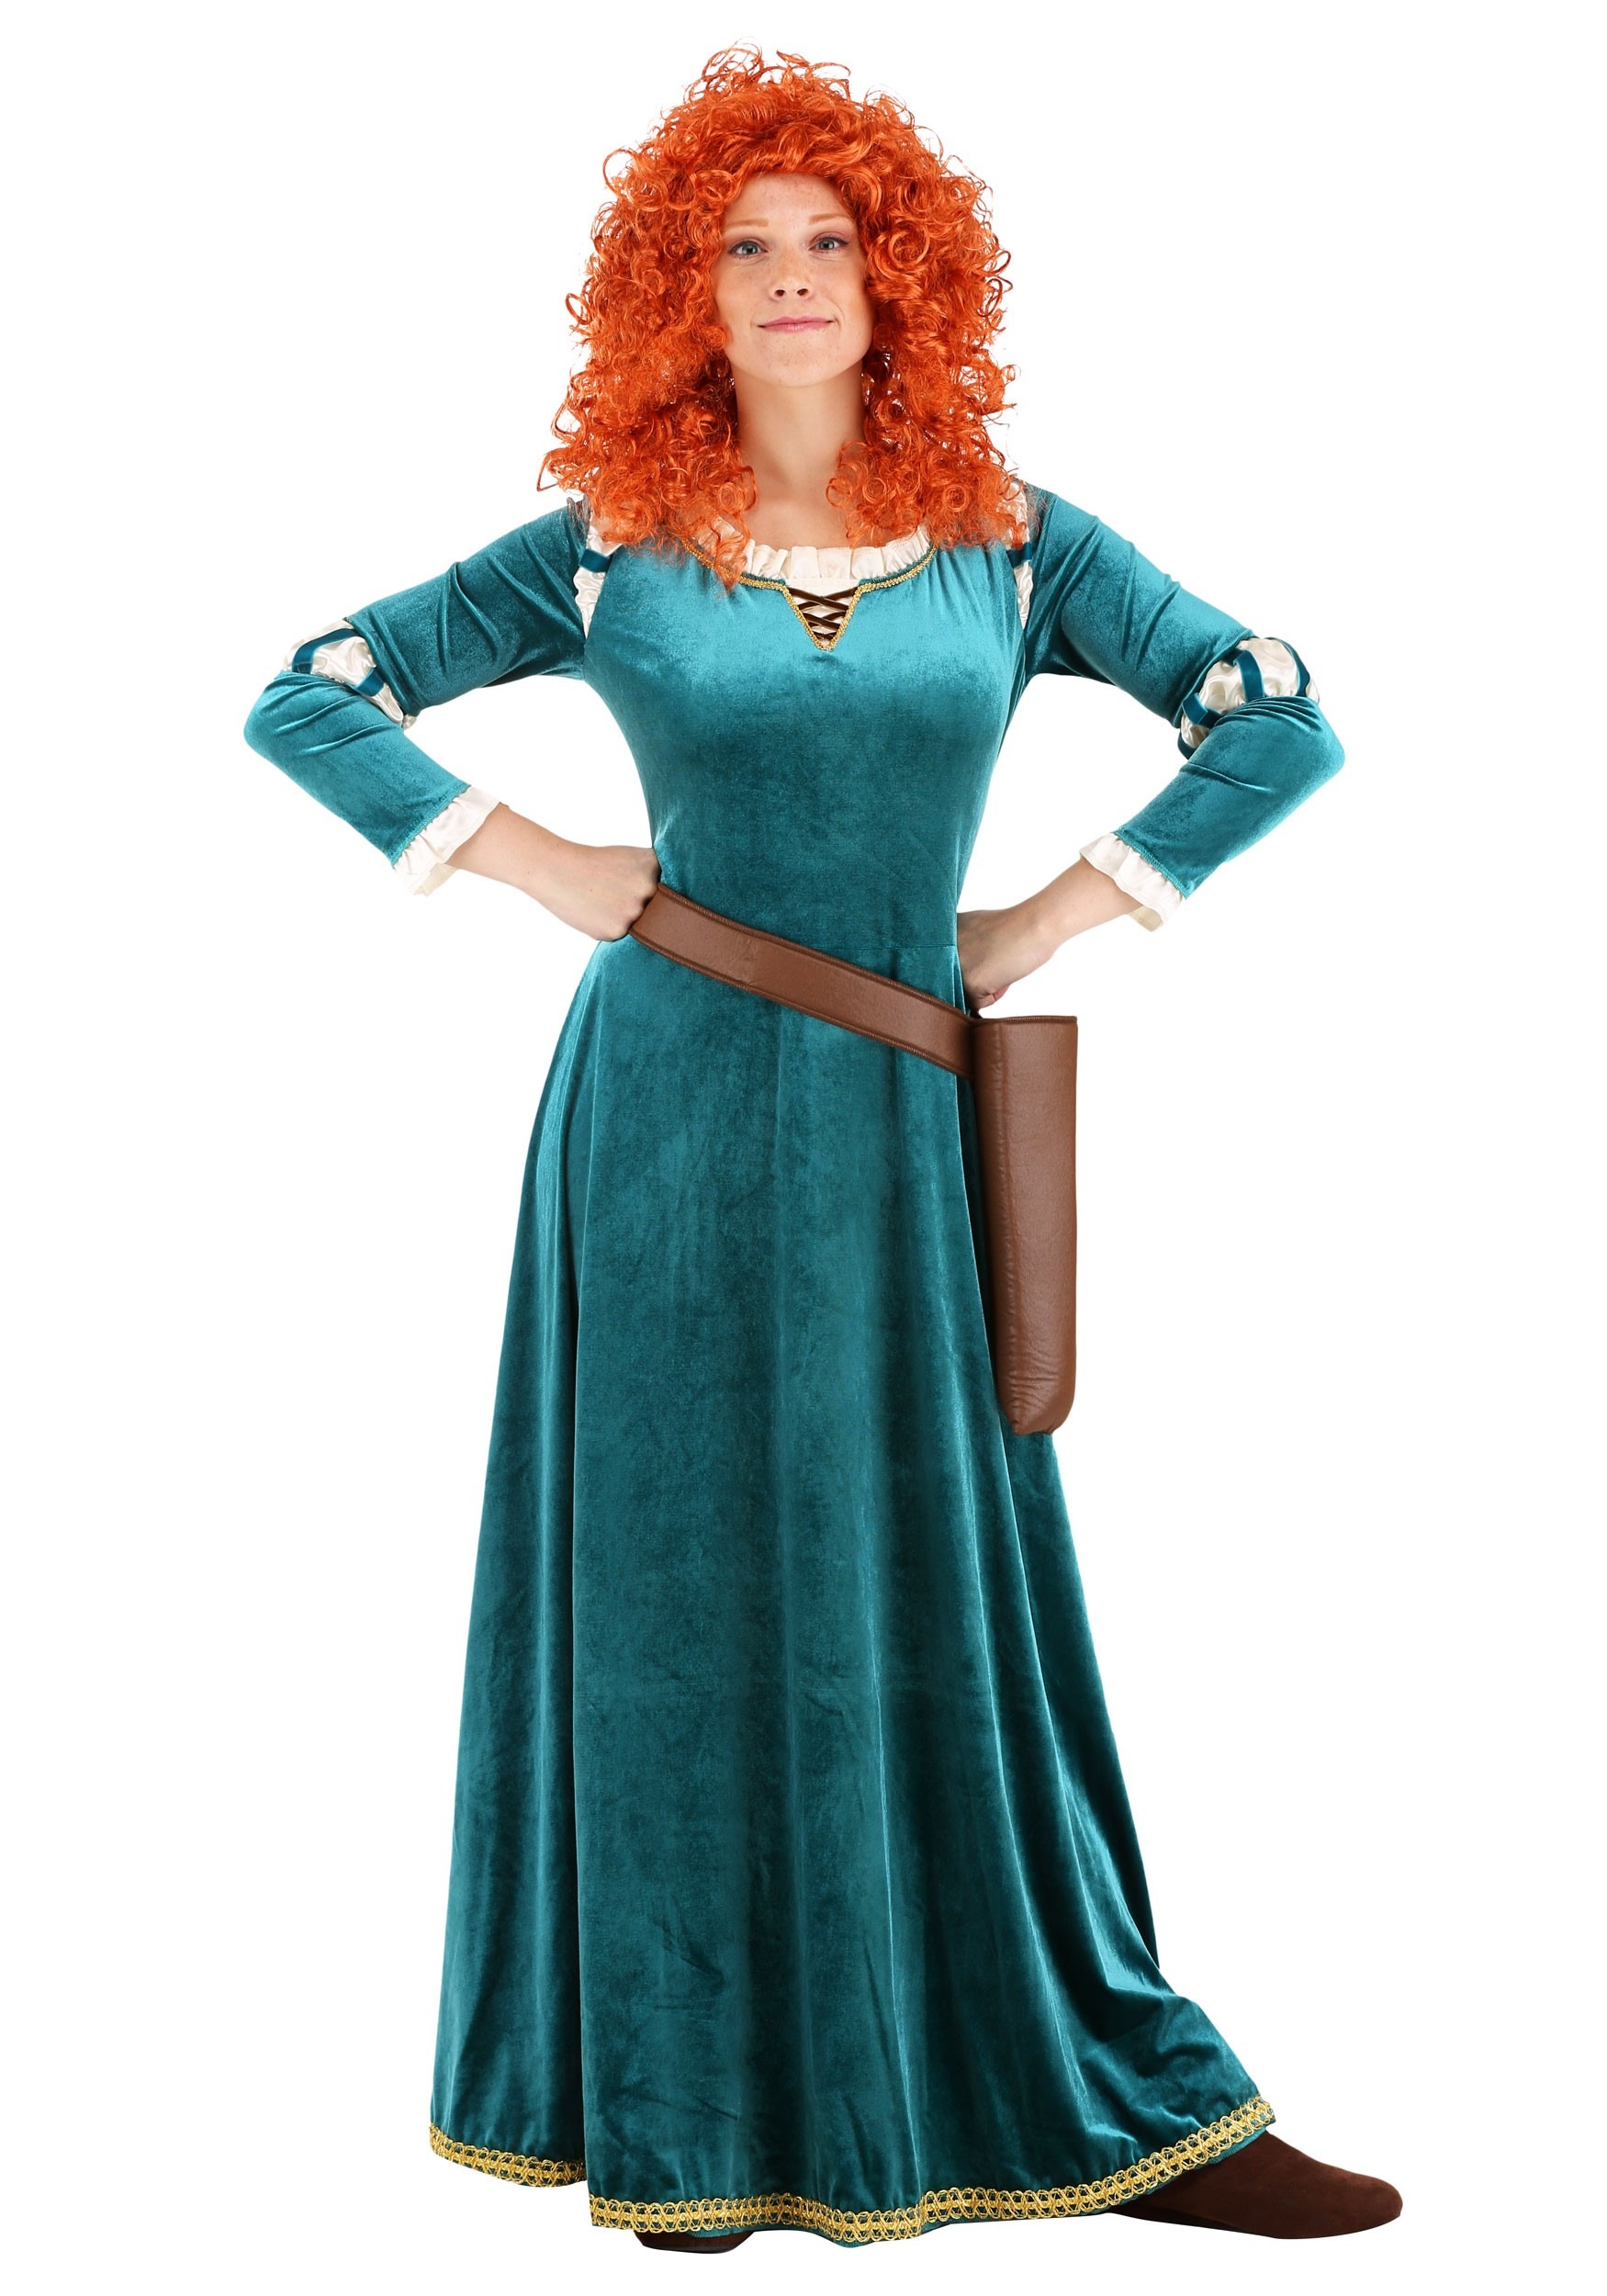 Brave Women's Disney Merida Costume